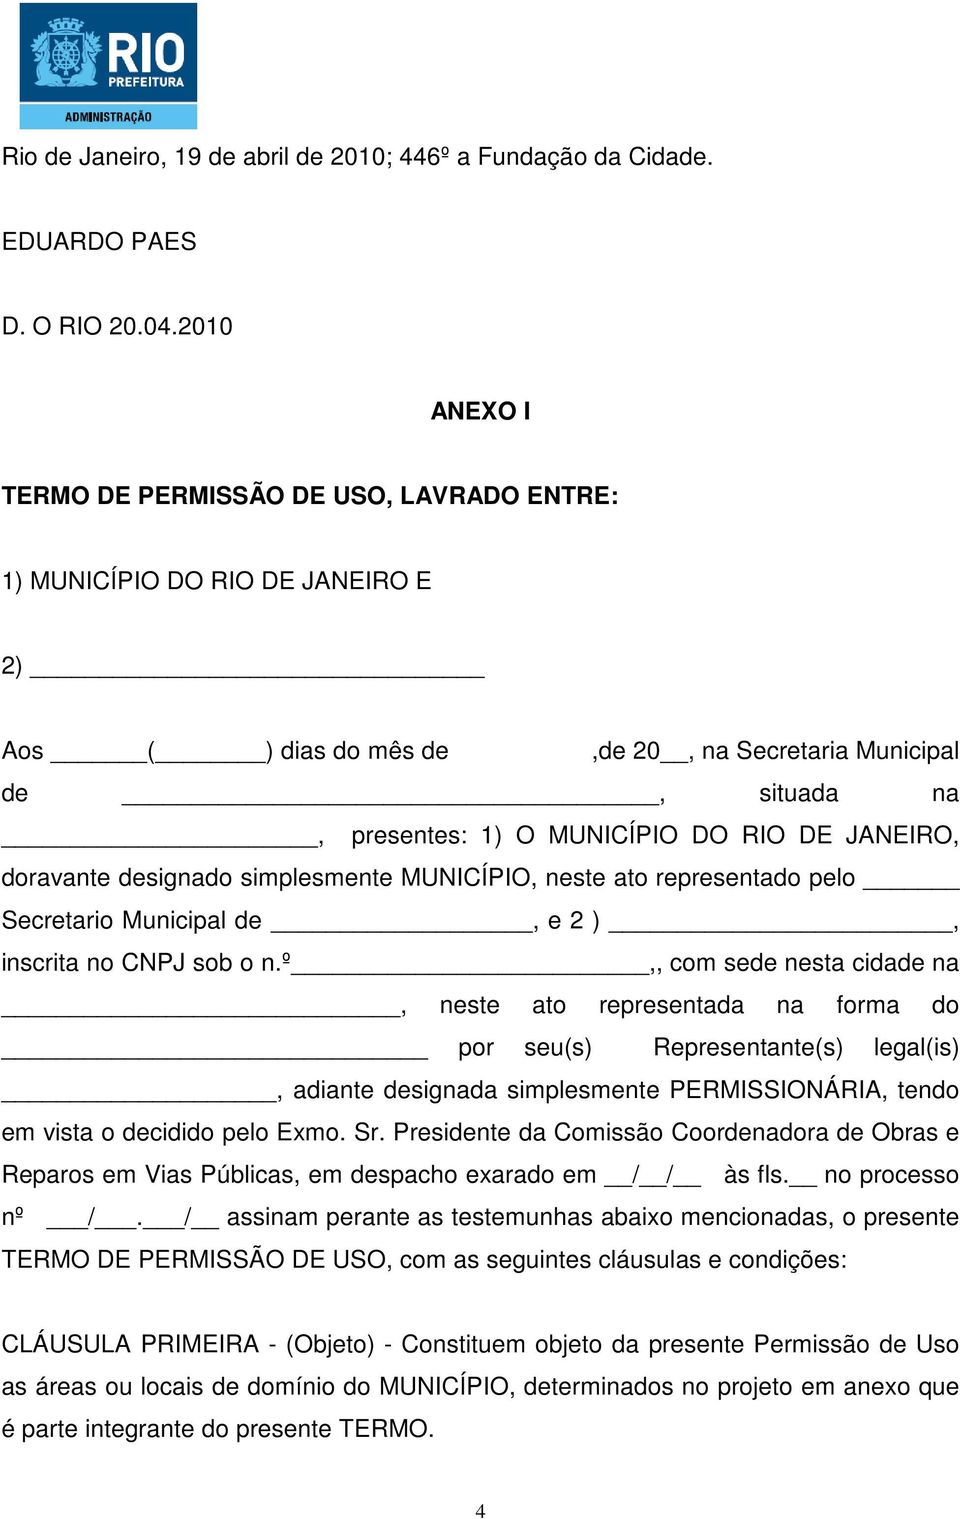 JANEIRO, doravante designado simplesmente MUNICÍPIO, neste ato representado pelo Secretario Municipal de, e 2 ), inscrita no CNPJ sob o n.